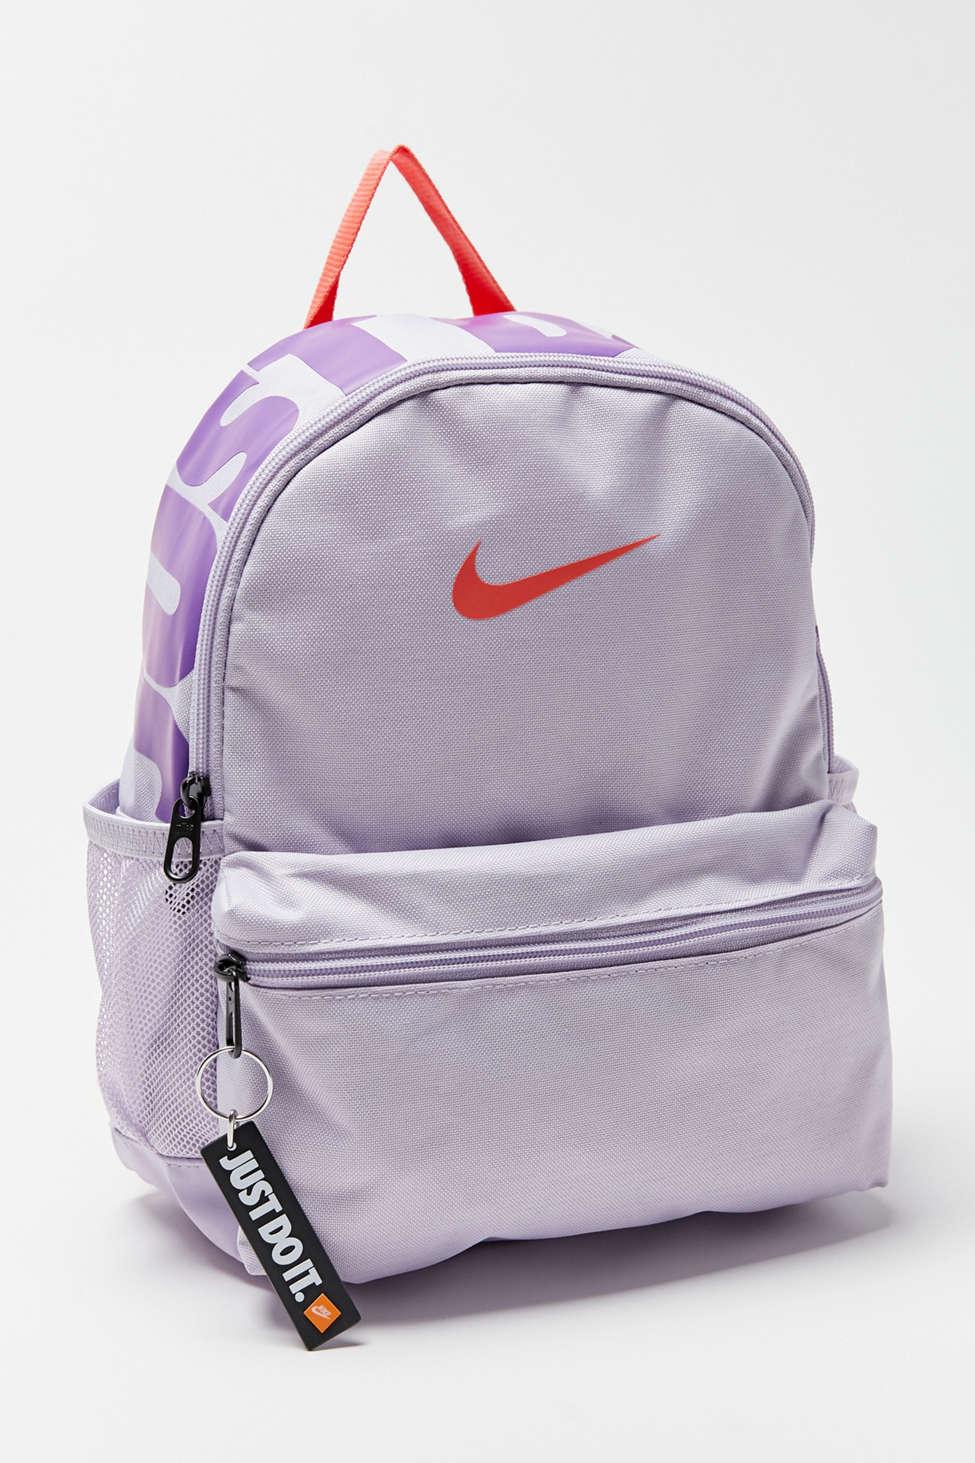 Nike Brasilla Just Do It Mini Backpack in Purple - Lyst